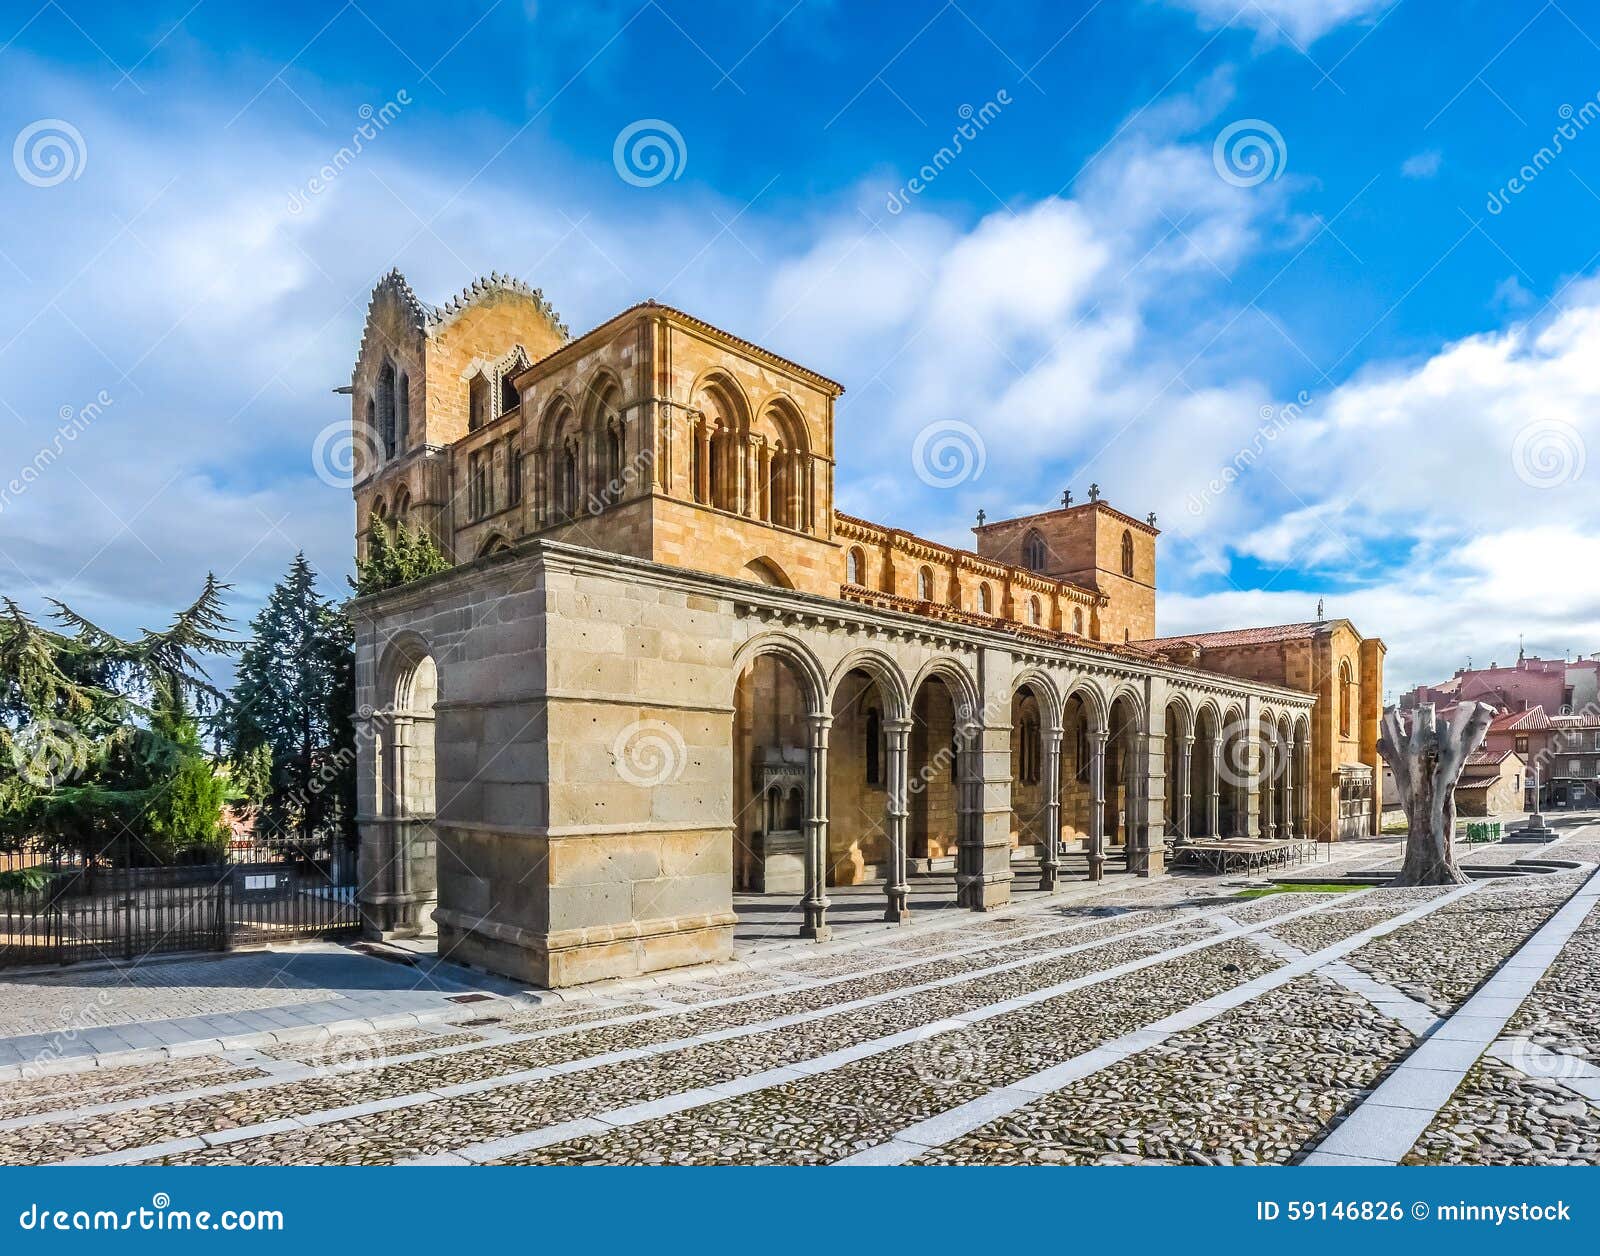 beautiful basilica de san vicente, avila, castilla y leon, spain